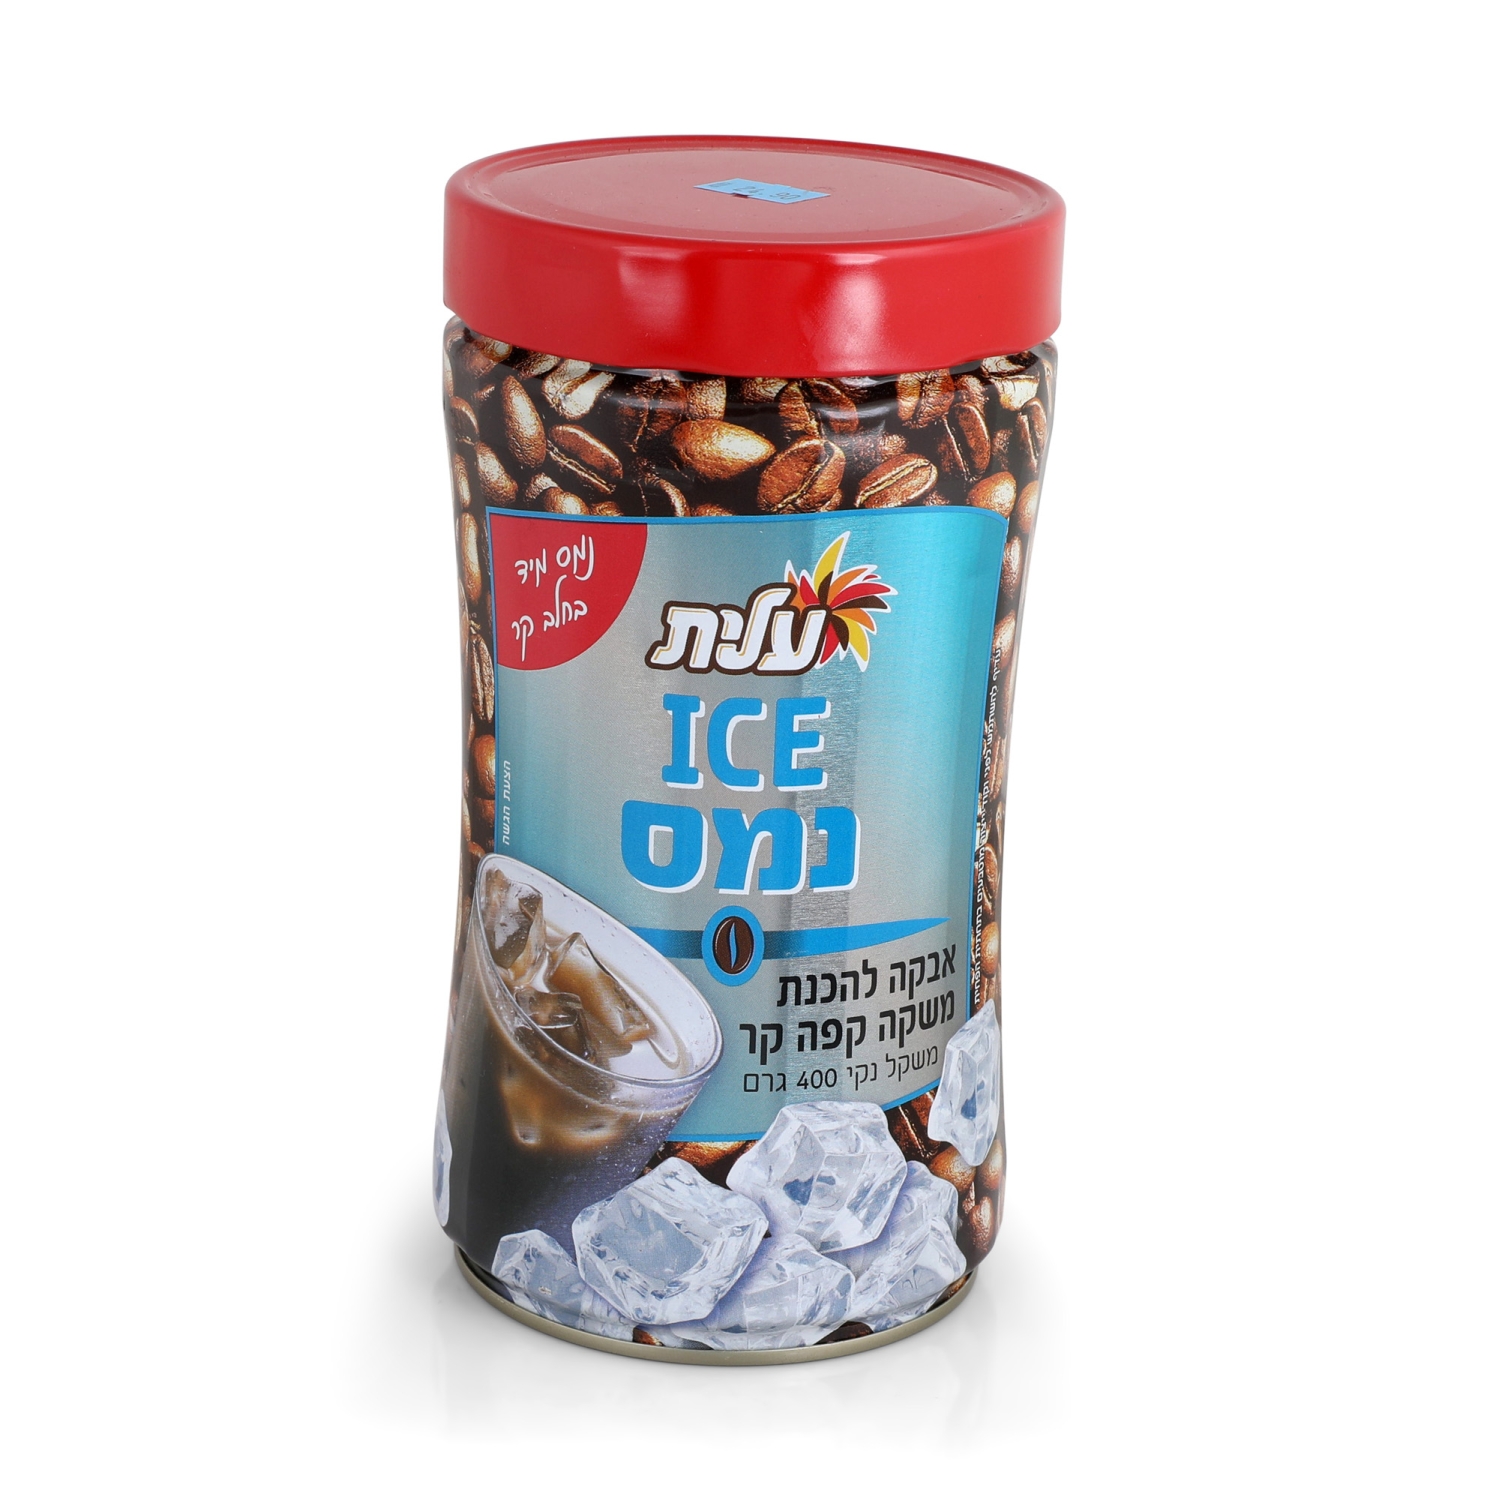 Elite Instant Ice Coffee Powder - 1